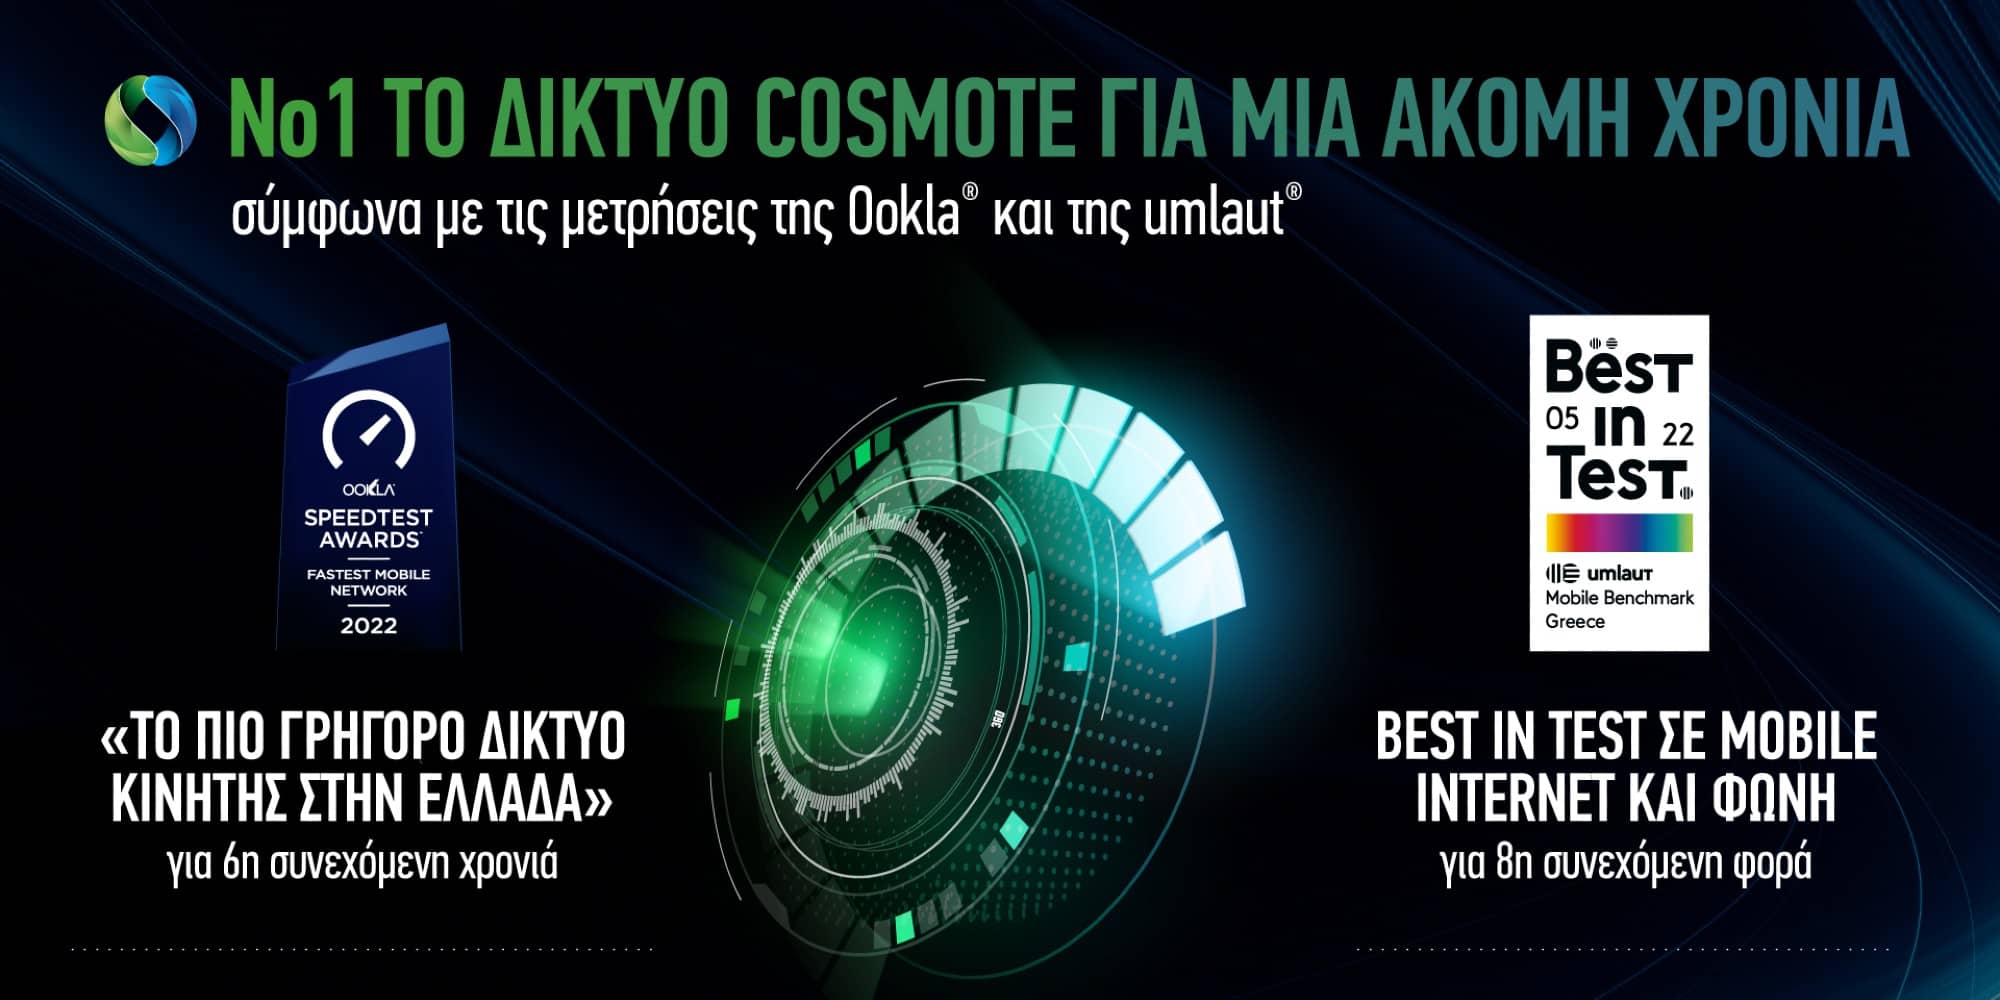 Το δίκτυο Cosmote για μία ακόμη χρονιά στην πρώτη θέση σύμφωνα με τις μετρήσεις της Οokla και της umlaut